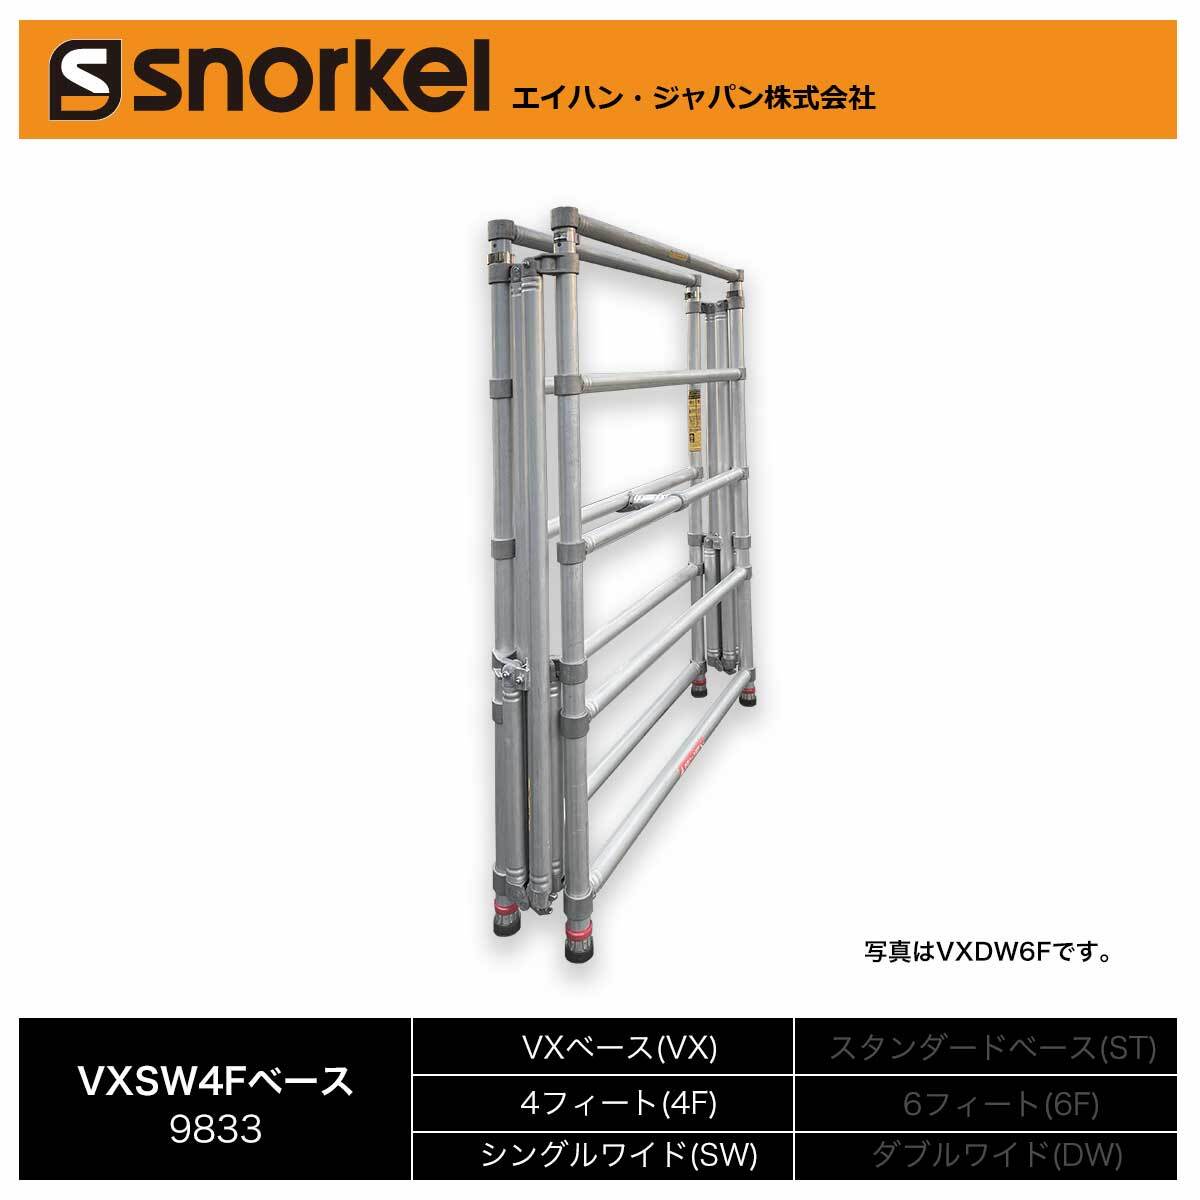  snorkel aluminium low кольцо tower часть материал одиночный товар VXSW4F основа рама ( Hasegawa промышленность )